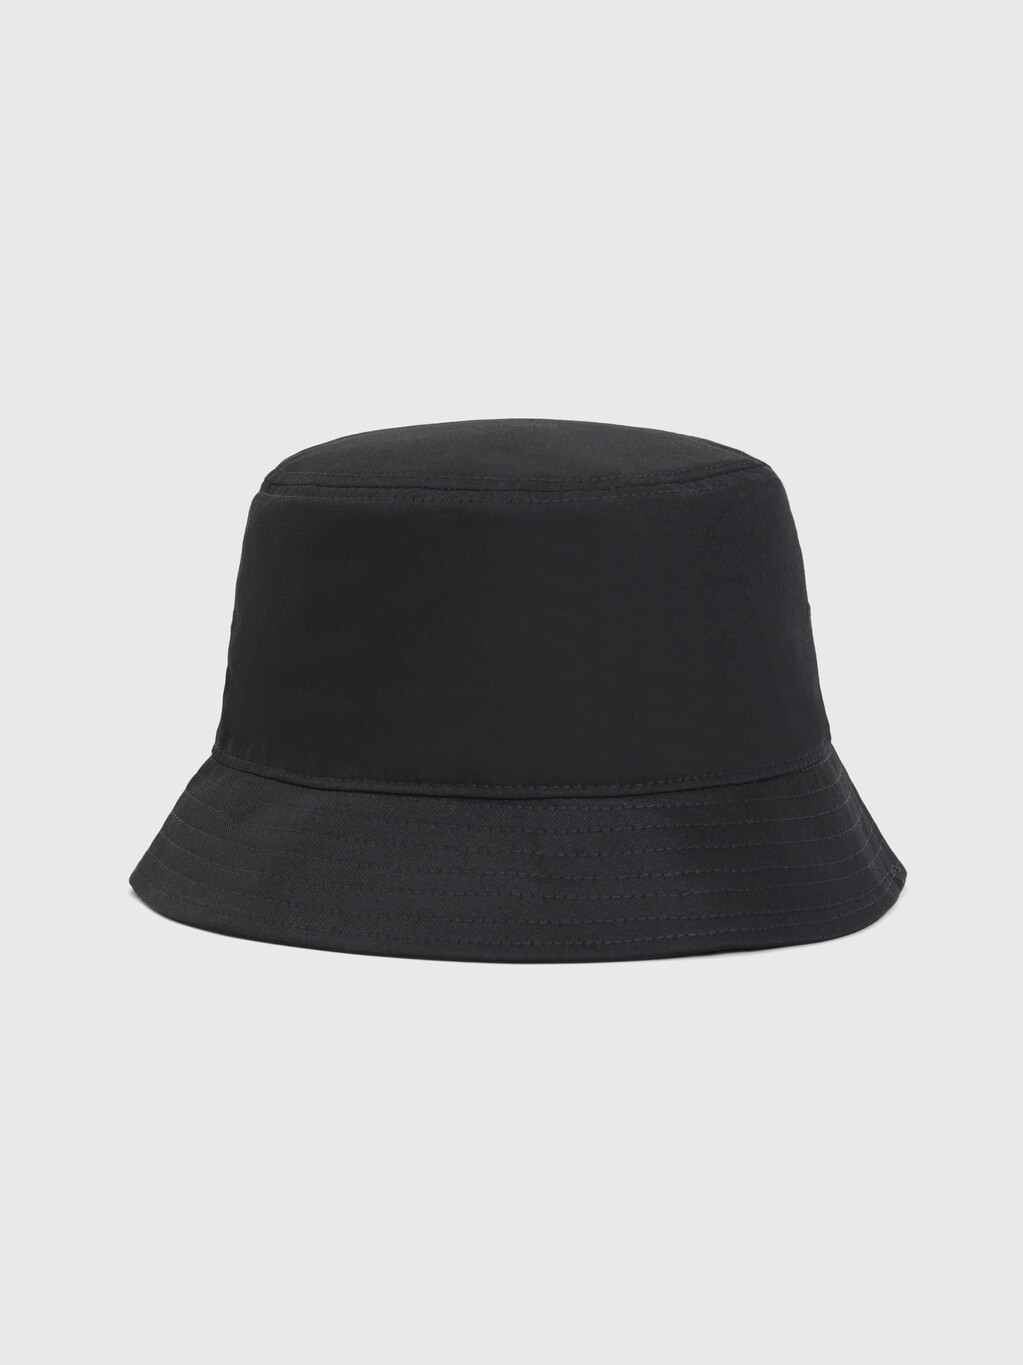 純有機棉旗幟漁夫帽, Black, hi-res